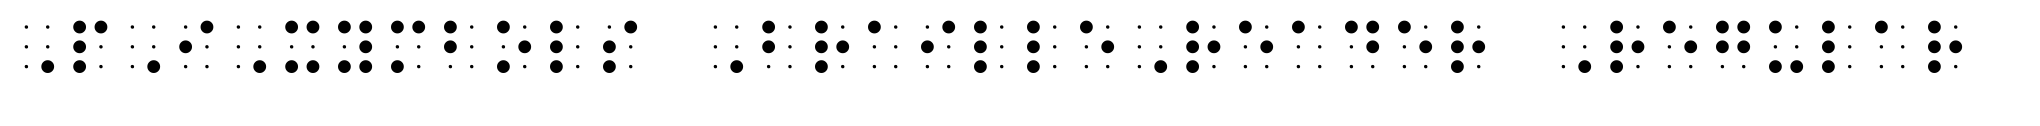 PIXymbols BrailleReader Regular image